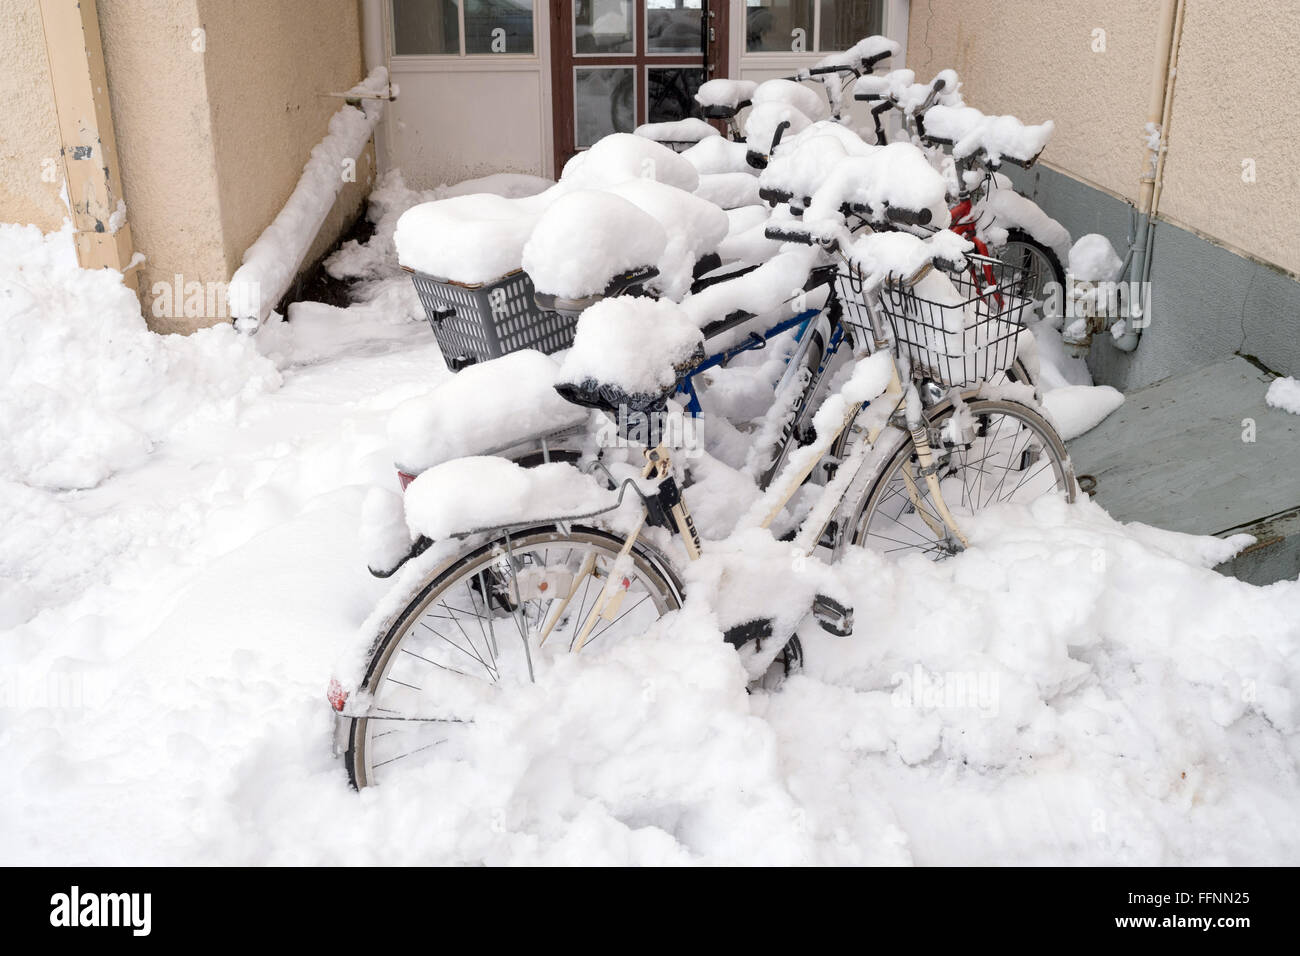 Rovaniemi, Finnland. 13. Februar 2016. Verschneite Fahrräder vor dem Eingang zu einem Haus in Rovaniemi, Finnland, 13. Februar 2016 zu sehen. Foto: Peter Endig - NO-Draht-SERVICE-/ Dpa/Alamy Live News Stockfoto